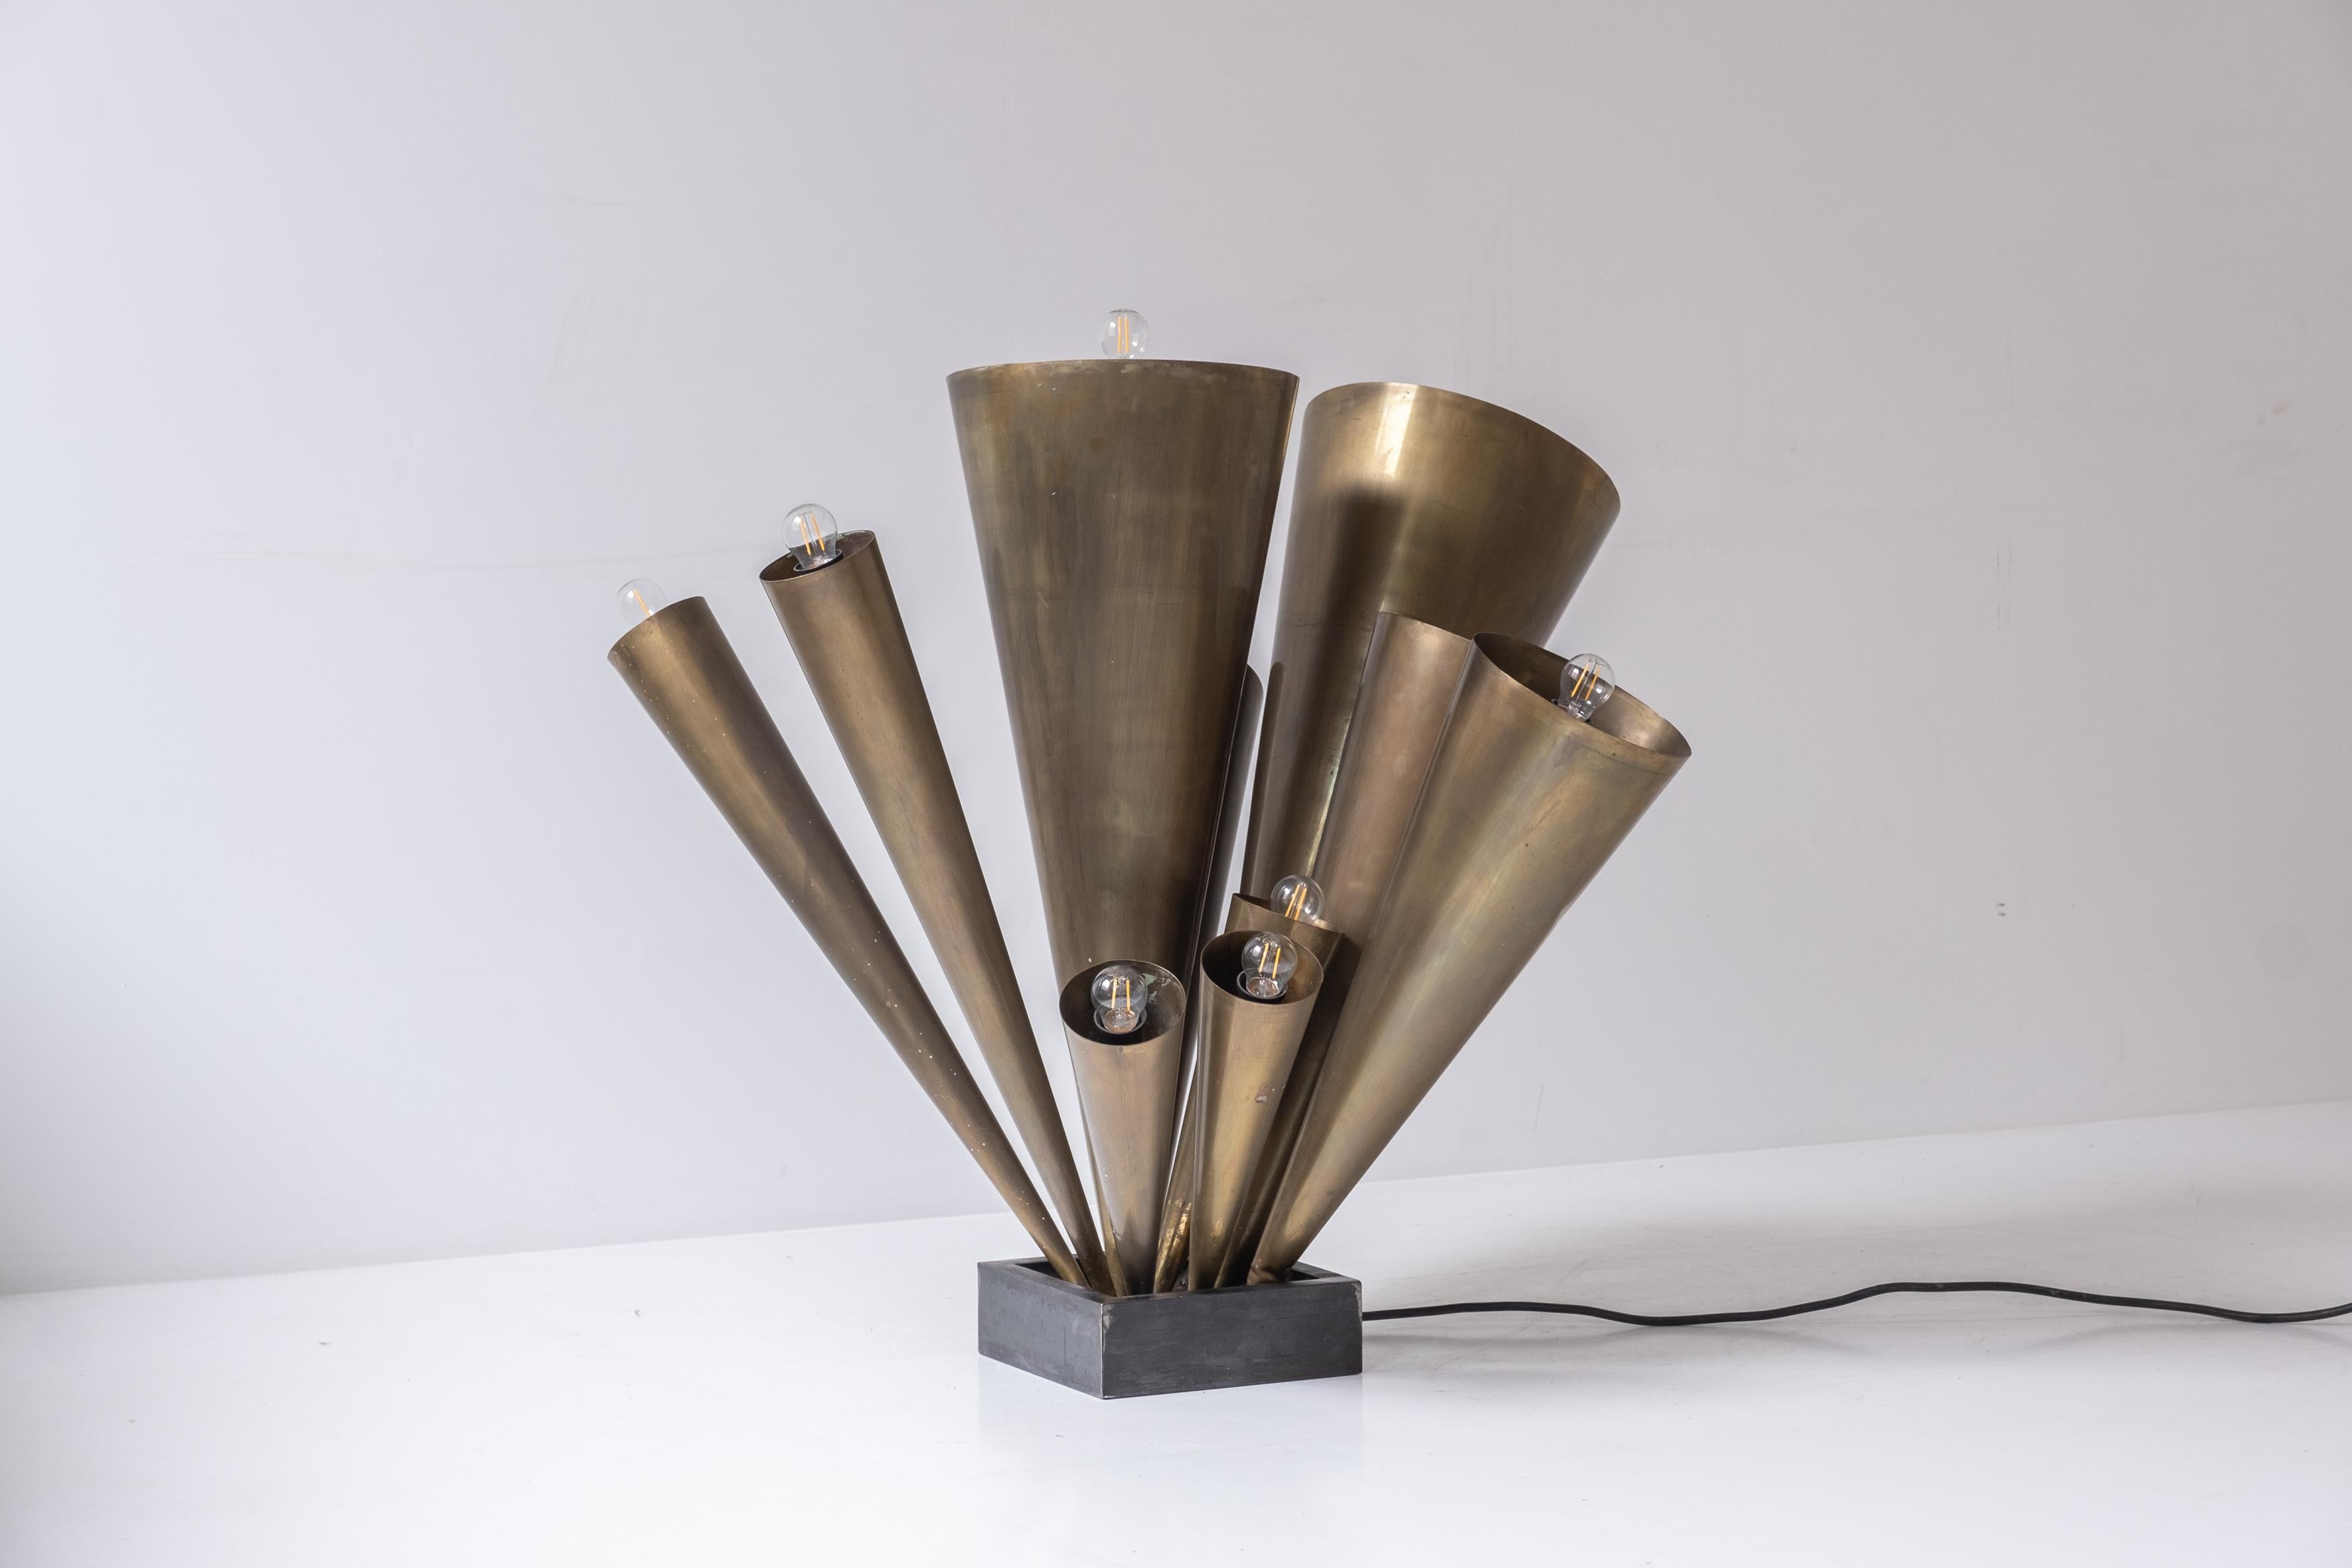 Exceptionnel lampadaire en laiton datant des années 1950. Cette sculpture lumineuse comporte dix abat-jour en forme de trompette montés sur un cadre en acier. Présenté en très bon état. Un chef-d'œuvre !